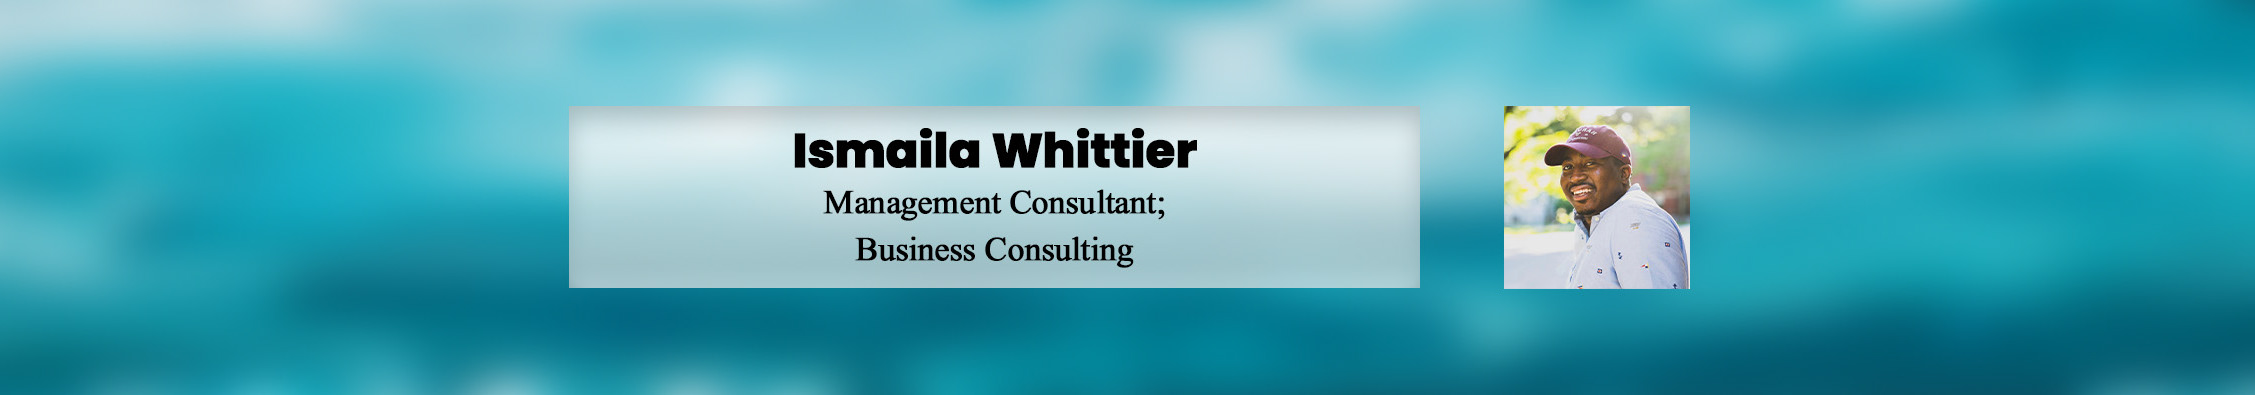 Ismaila Whittier profil başlığı